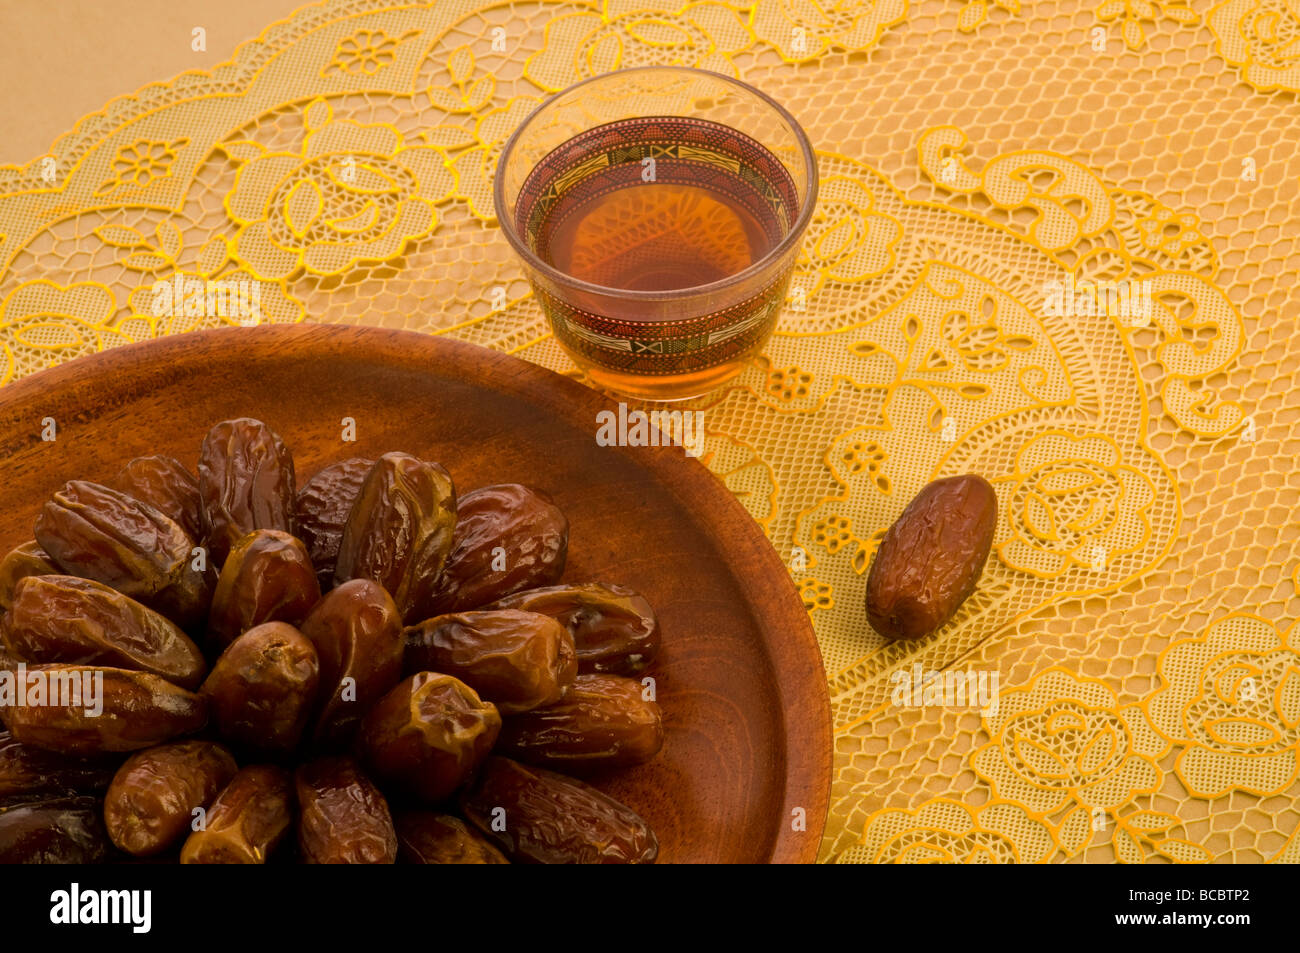 Arabischen Datumsangaben in einer hölzernen Platte mit Tasse Tee gerissen Stockfoto